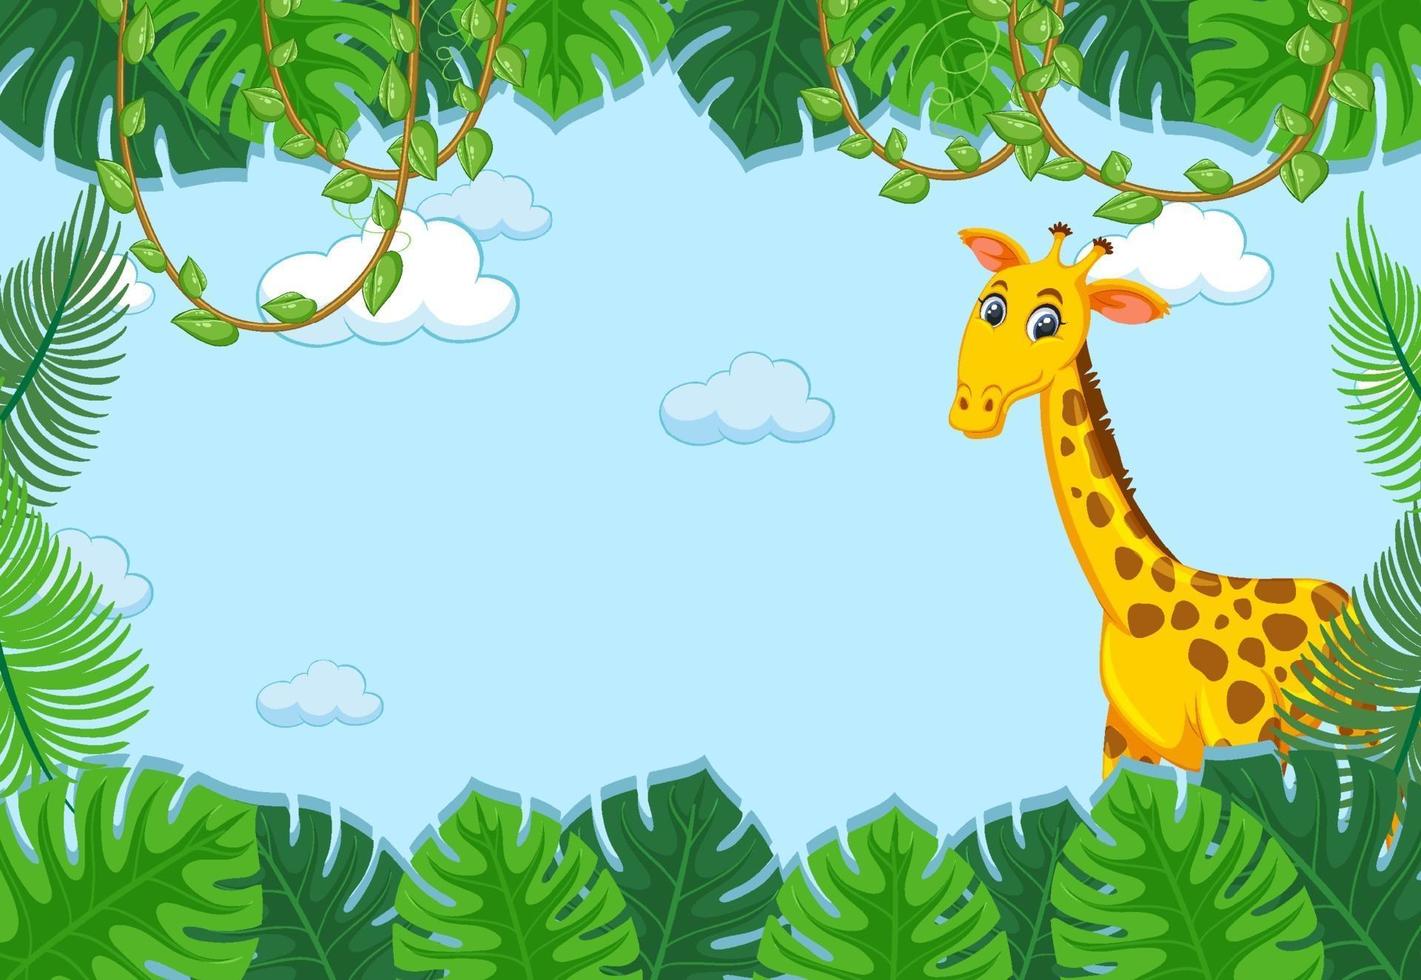 personaje de dibujos animados de jirafa con marco de hojas tropicales vector